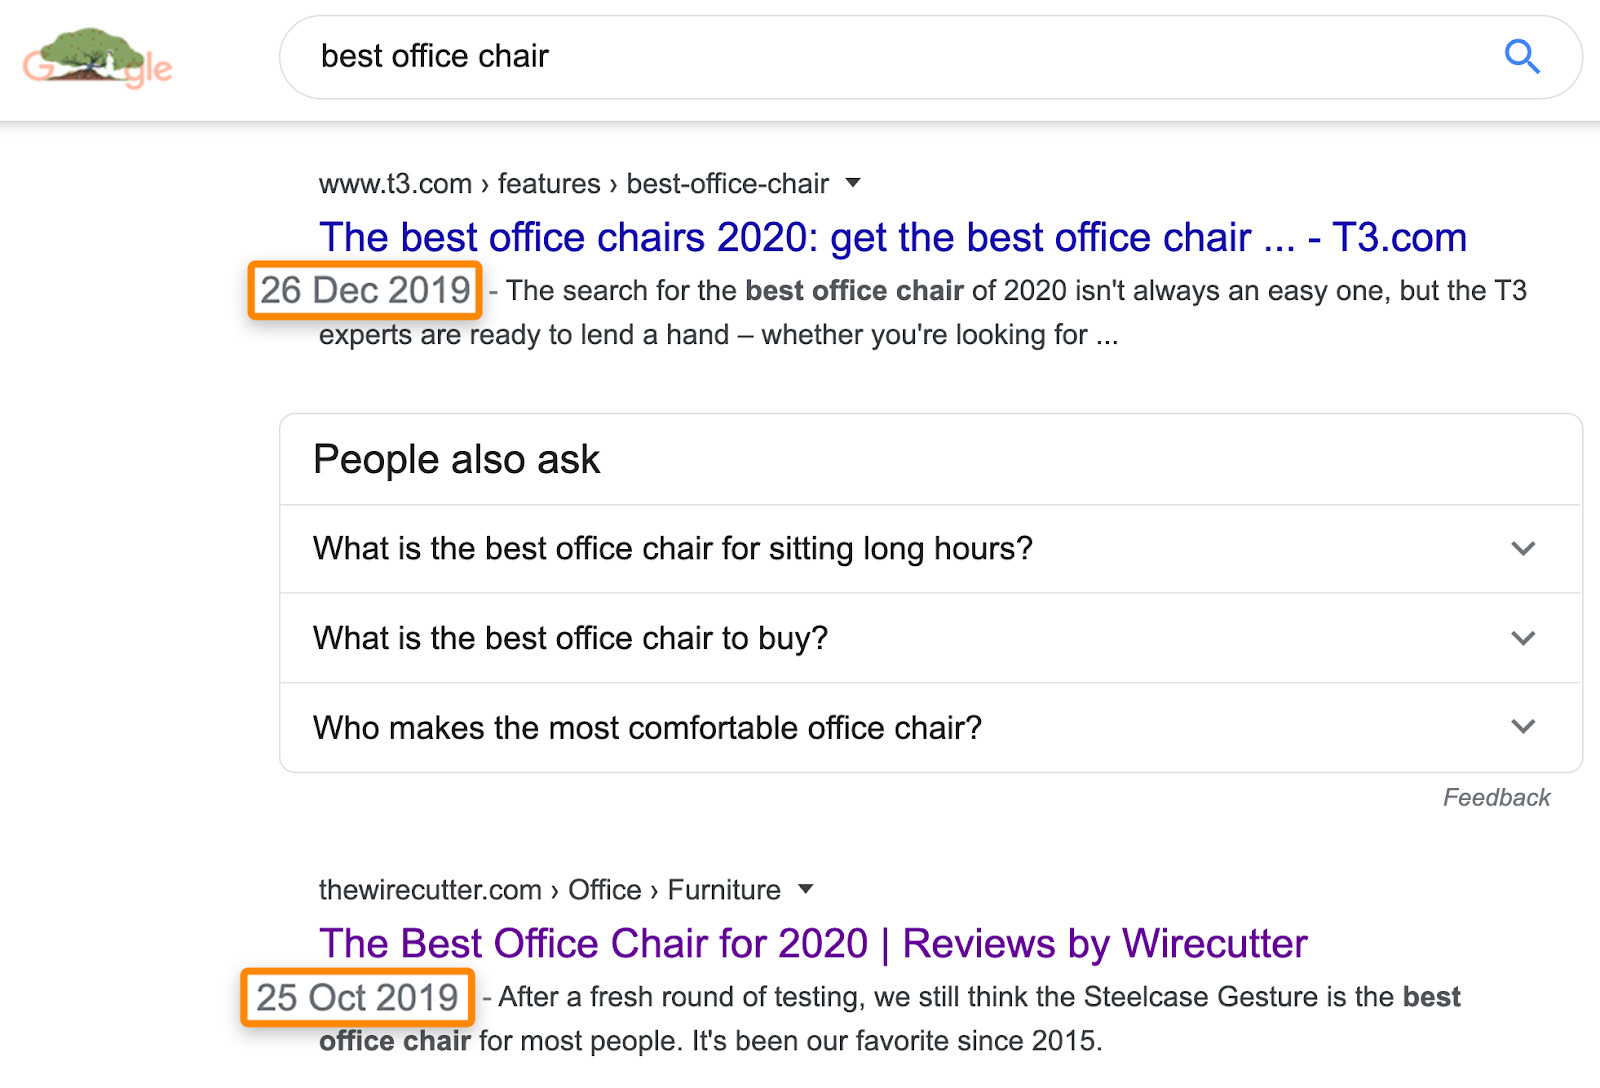 Suchergebnisse für "Bester Bürostuhl"